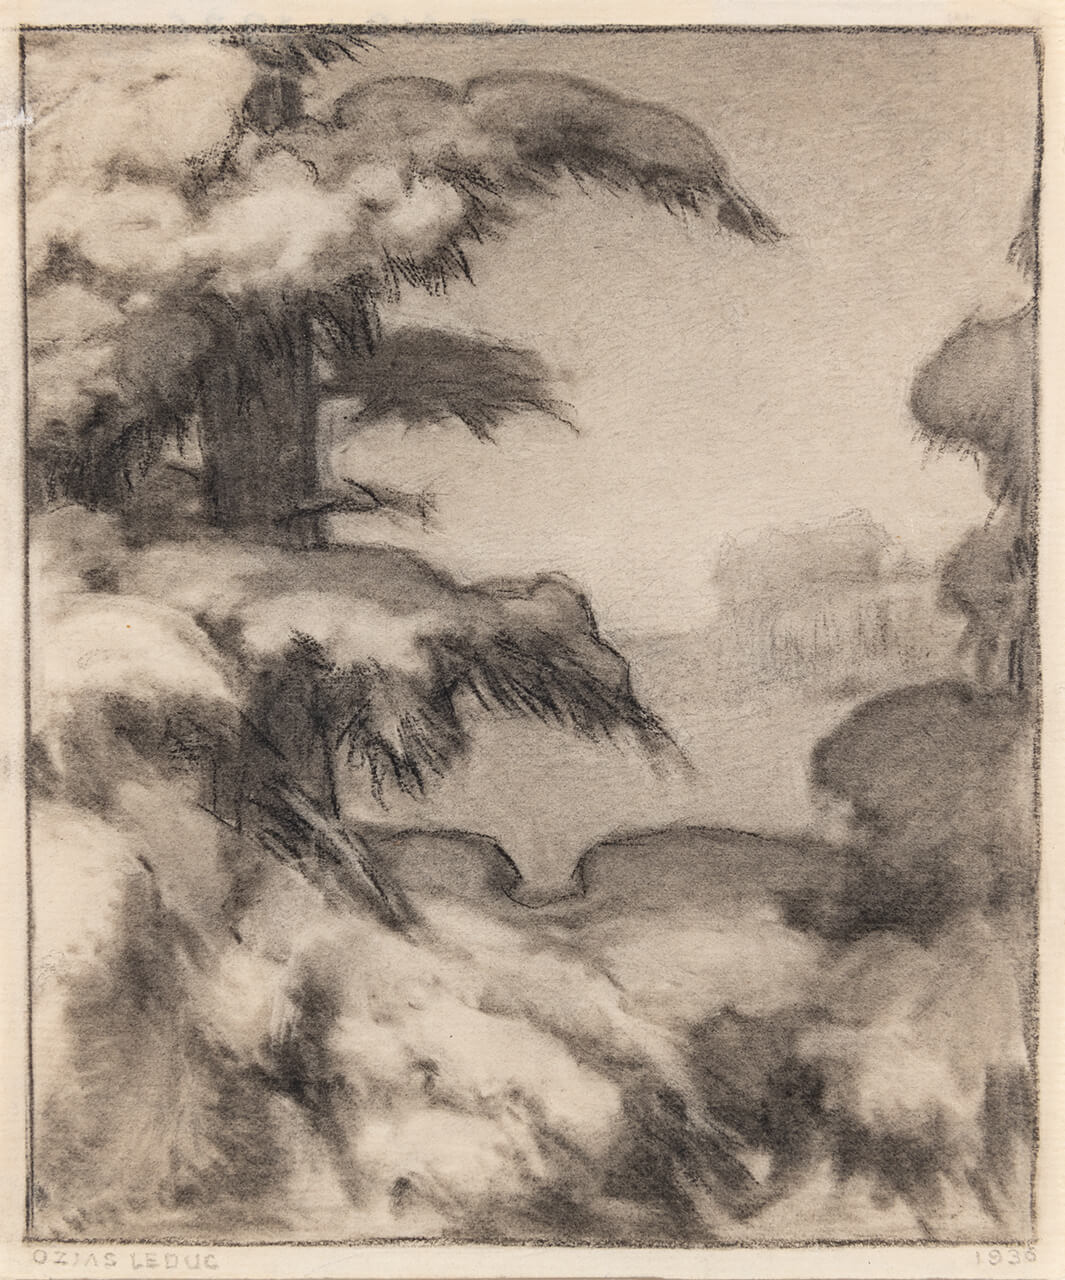 Ozias Leduc, Snow on Branches (Neige sur les branches), 1936